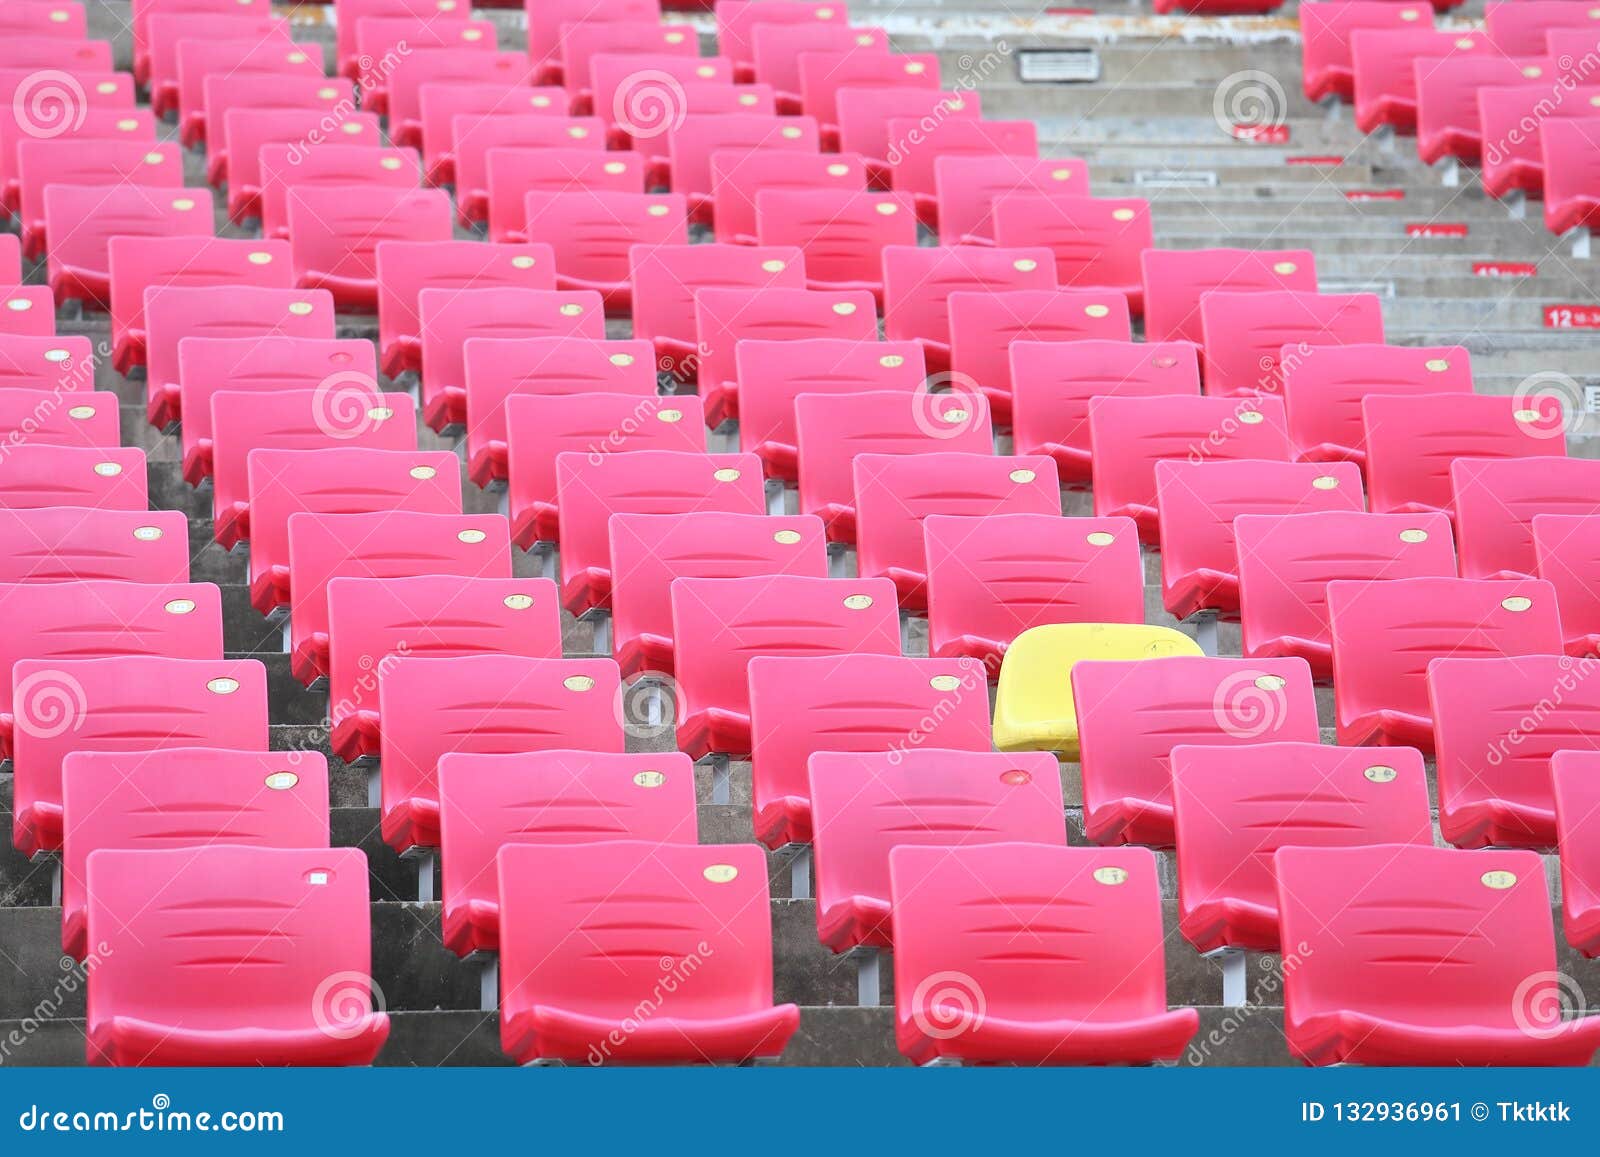 Red Seat Stadium Background Stock Image - Image of seat, unique: 132936961